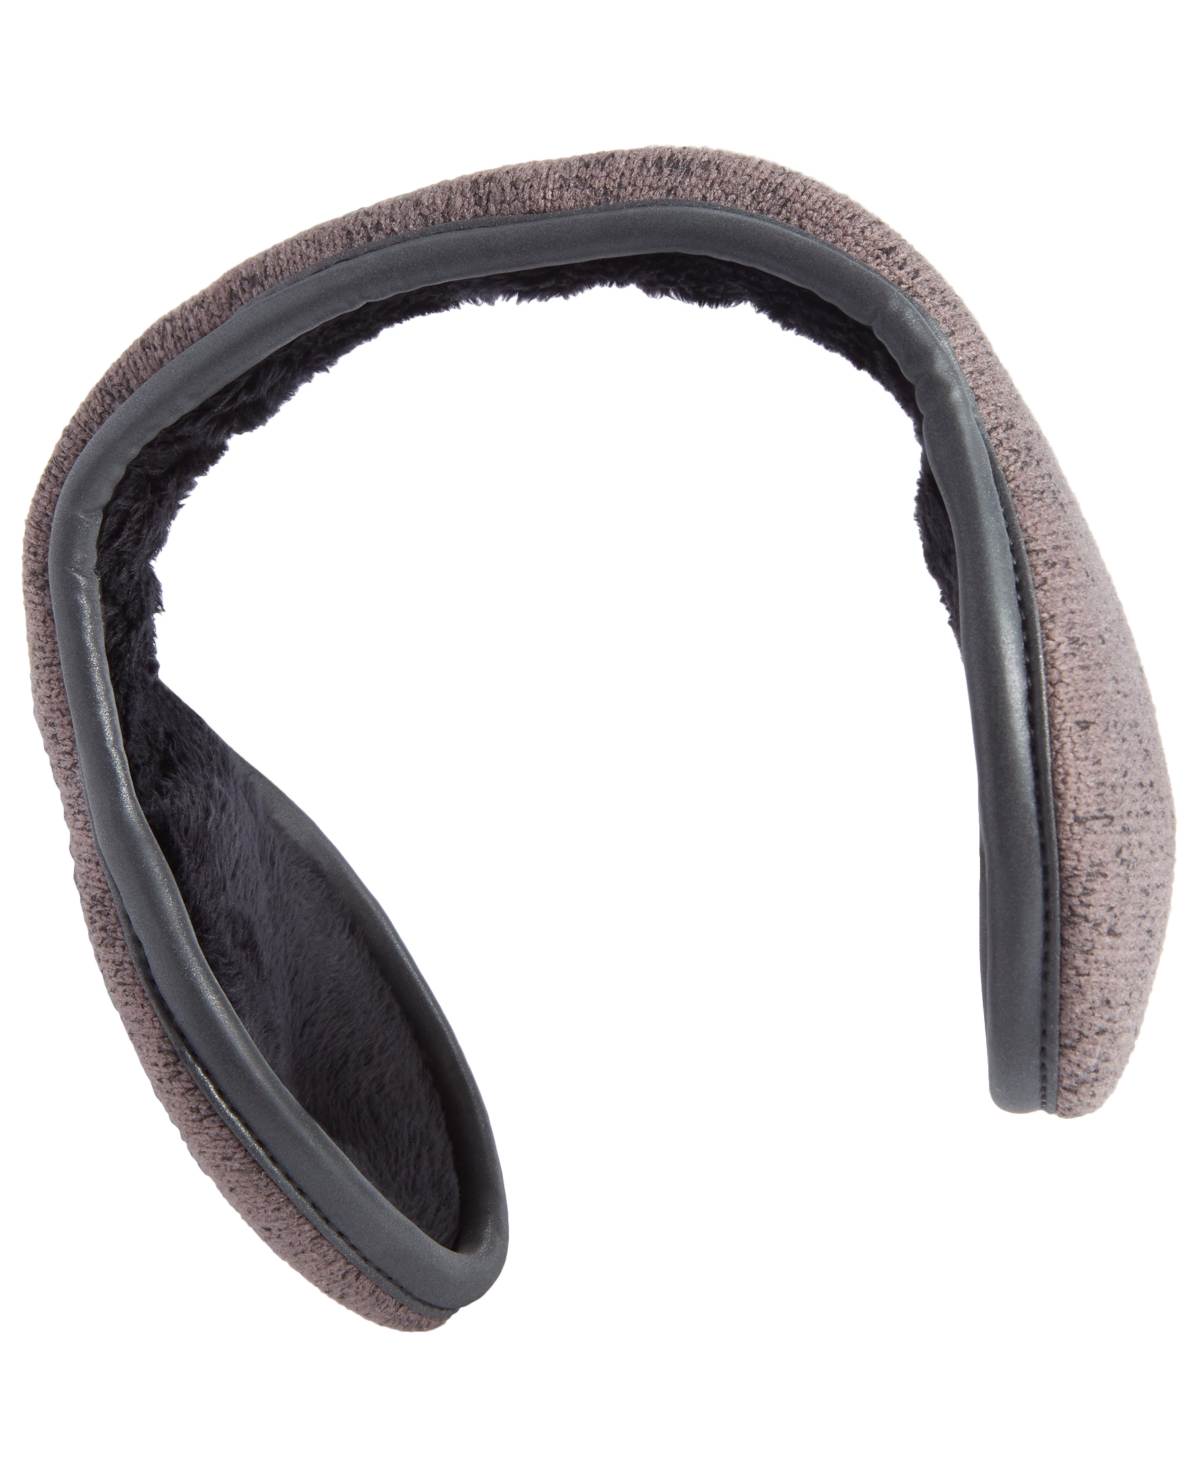 Ur Gloves Men's Sweater-knit Ear Warmers In Grey Multi